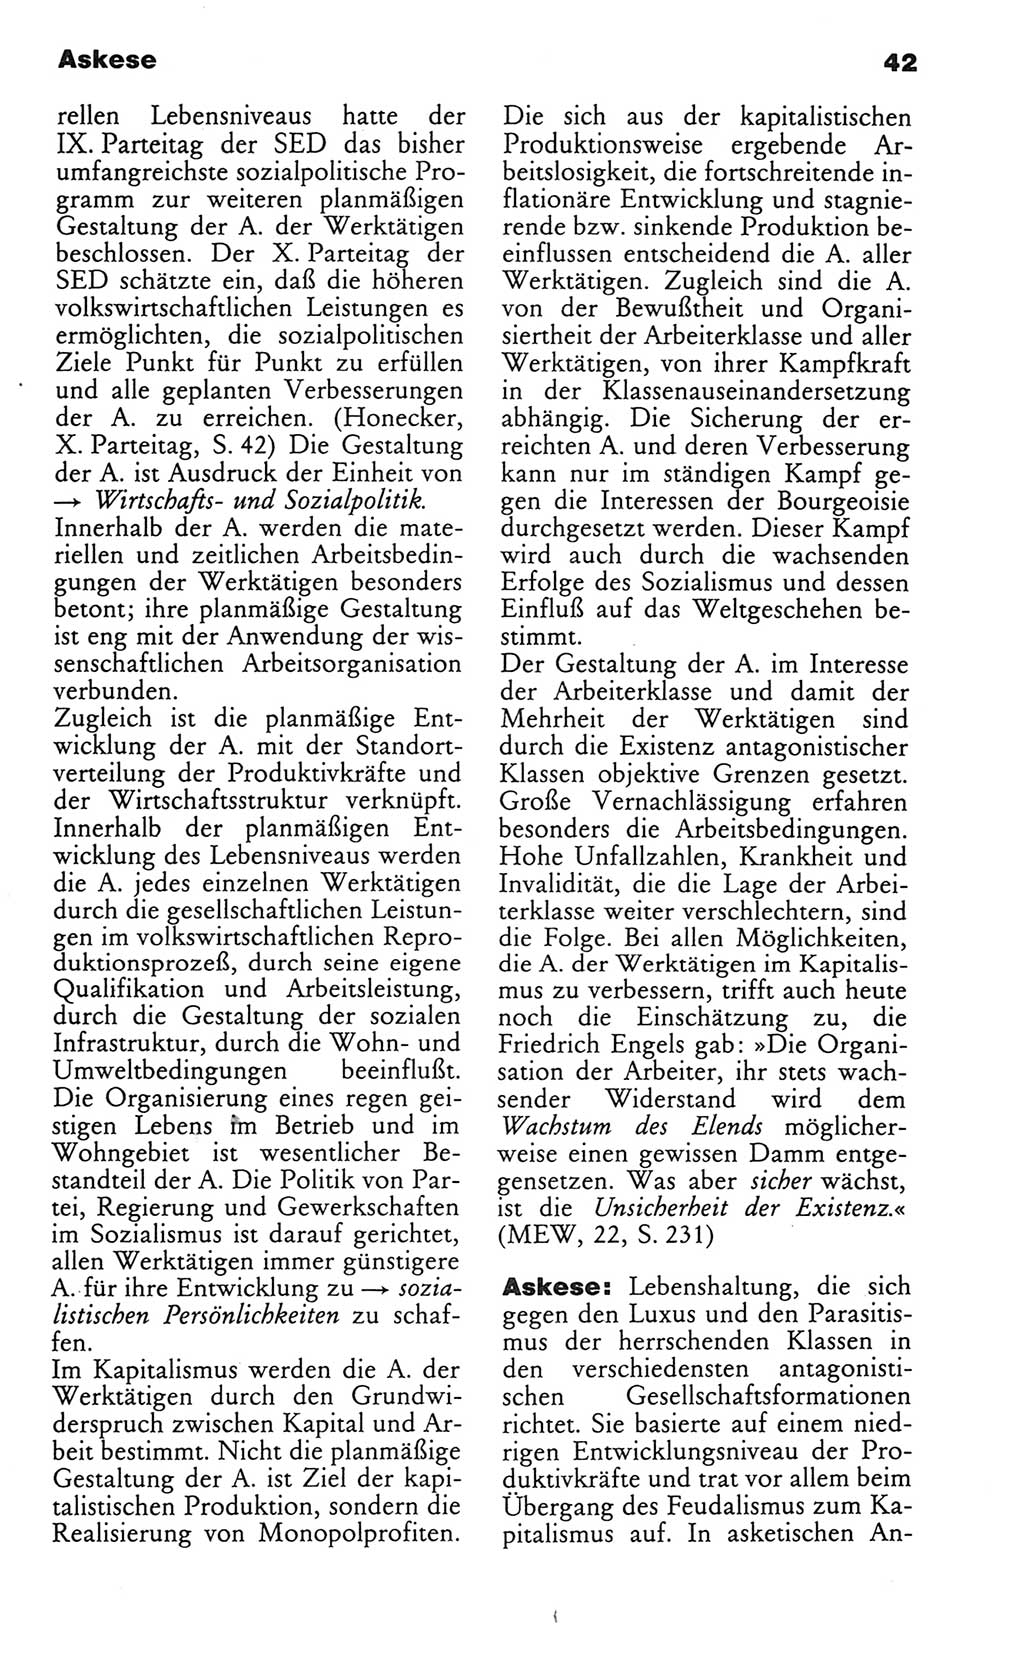 Wörterbuch des wissenschaftlichen Kommunismus [Deutsche Demokratische Republik (DDR)] 1982, Seite 42 (Wb. wiss. Komm. DDR 1982, S. 42)